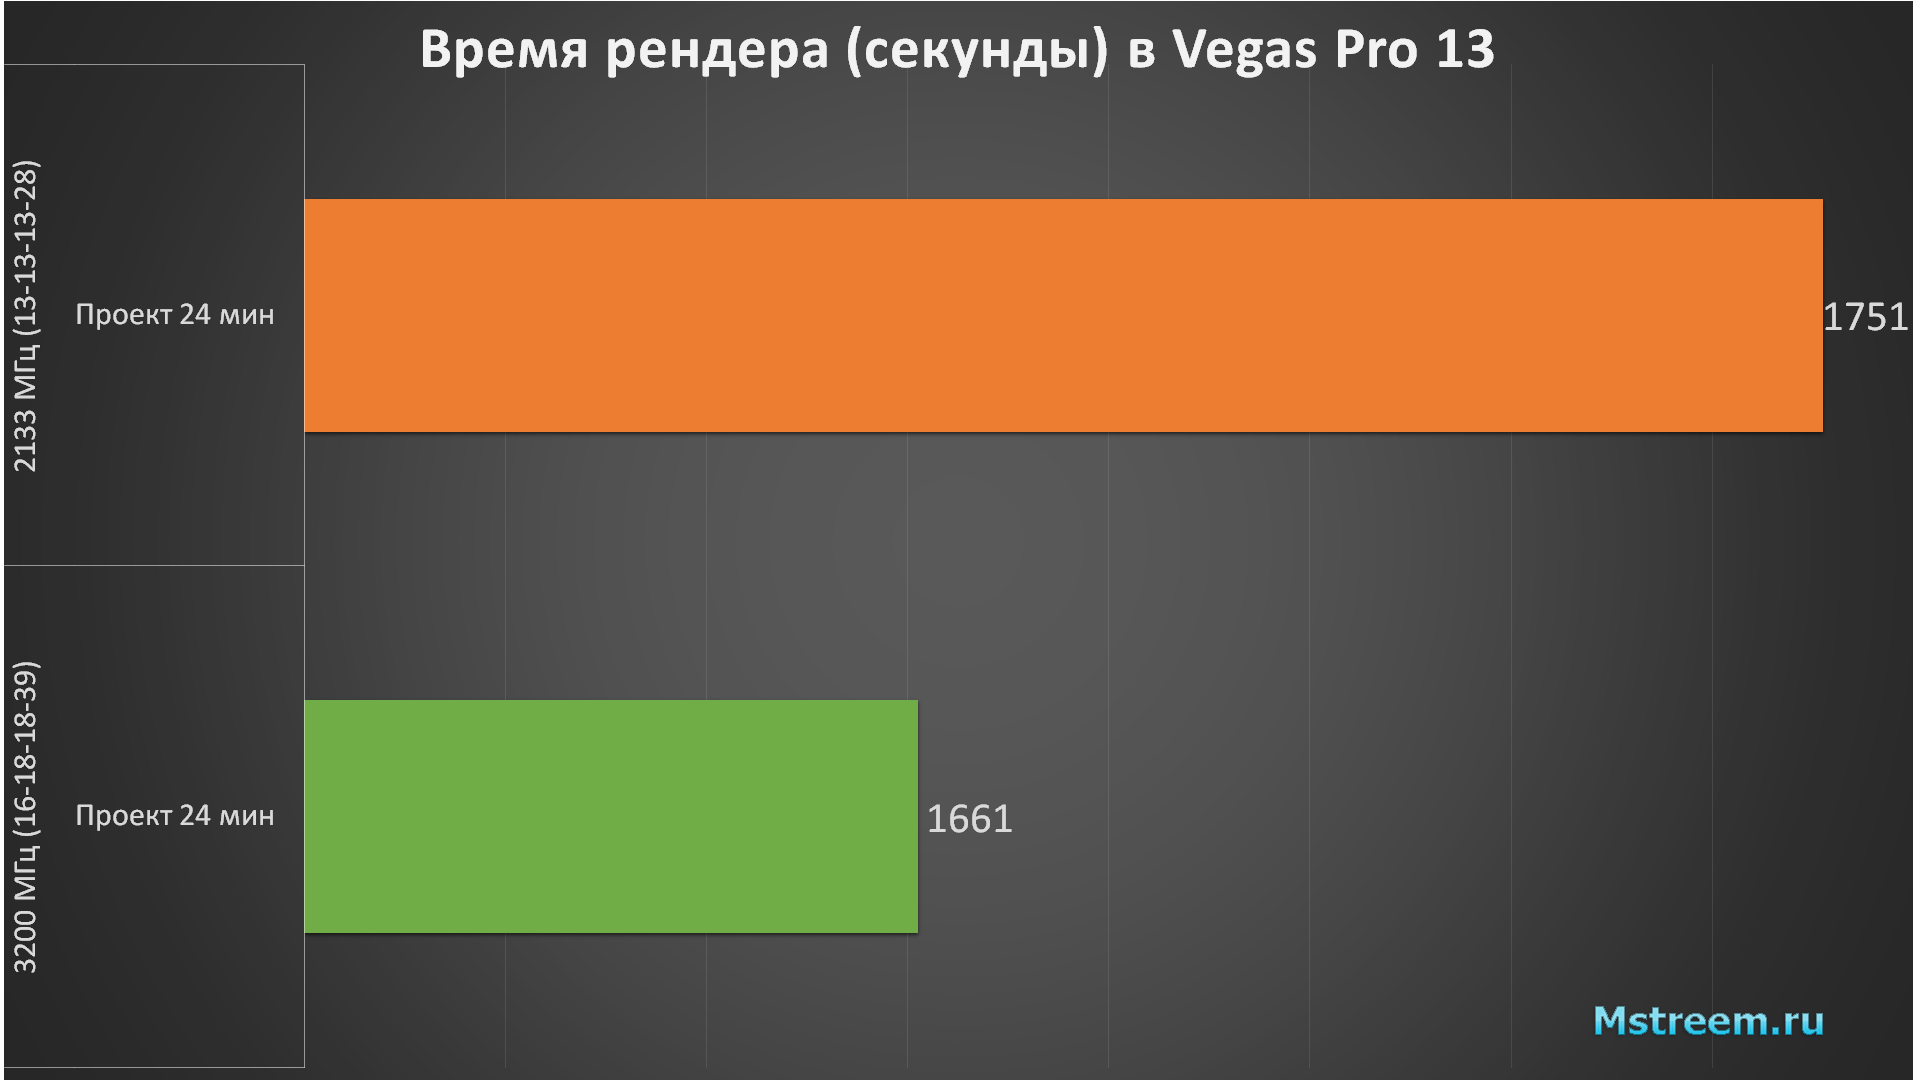 Монтаж в Vegas Pro 13. Оперативная память 2133 МГц vs 3200 МГц